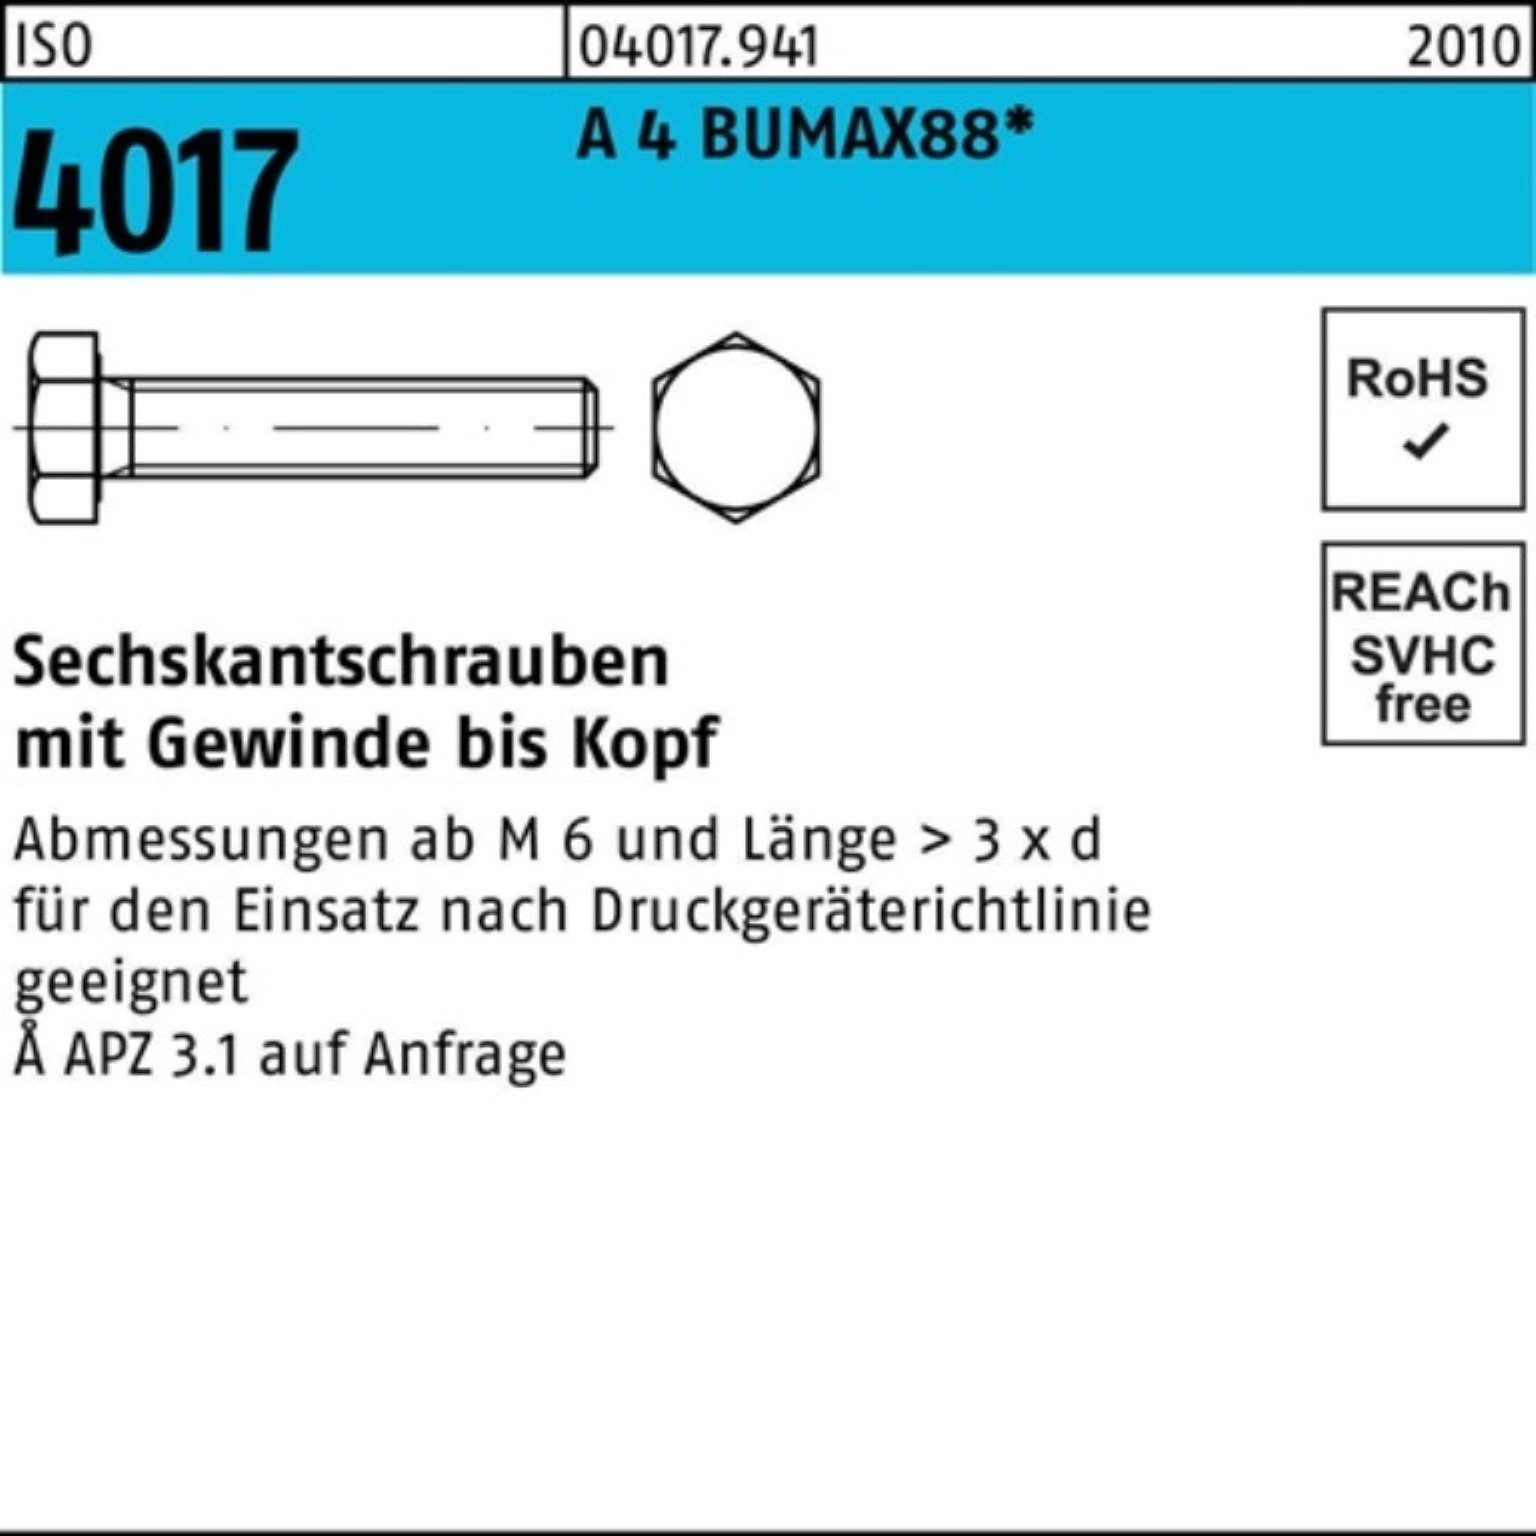 Bufab Sechskantschraube 100er Pack M10x 60 ISO BUMAX88 Stück Sechskantschraube 50 4 A VG 4017